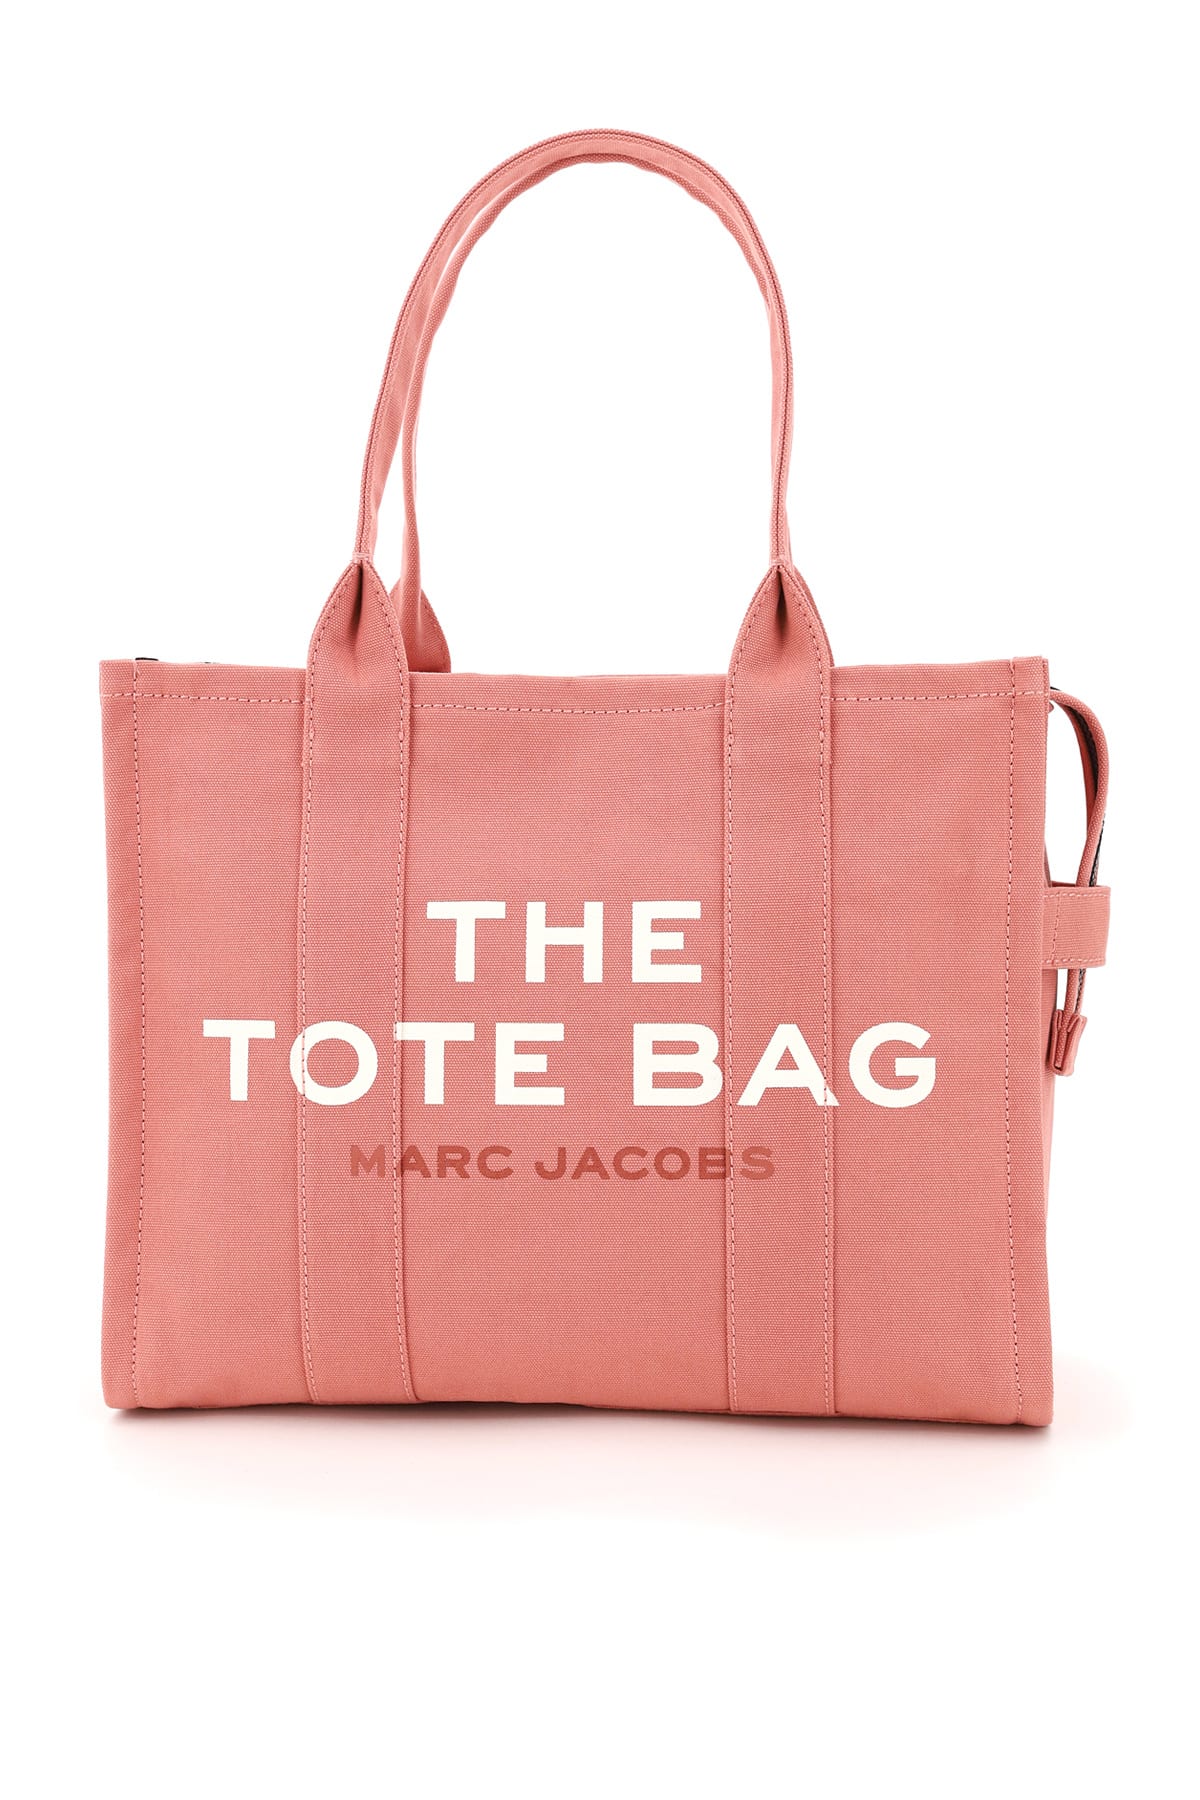 Marc Jacobs Canvas Tote Bag - Pink Totes, Handbags - MAR170076